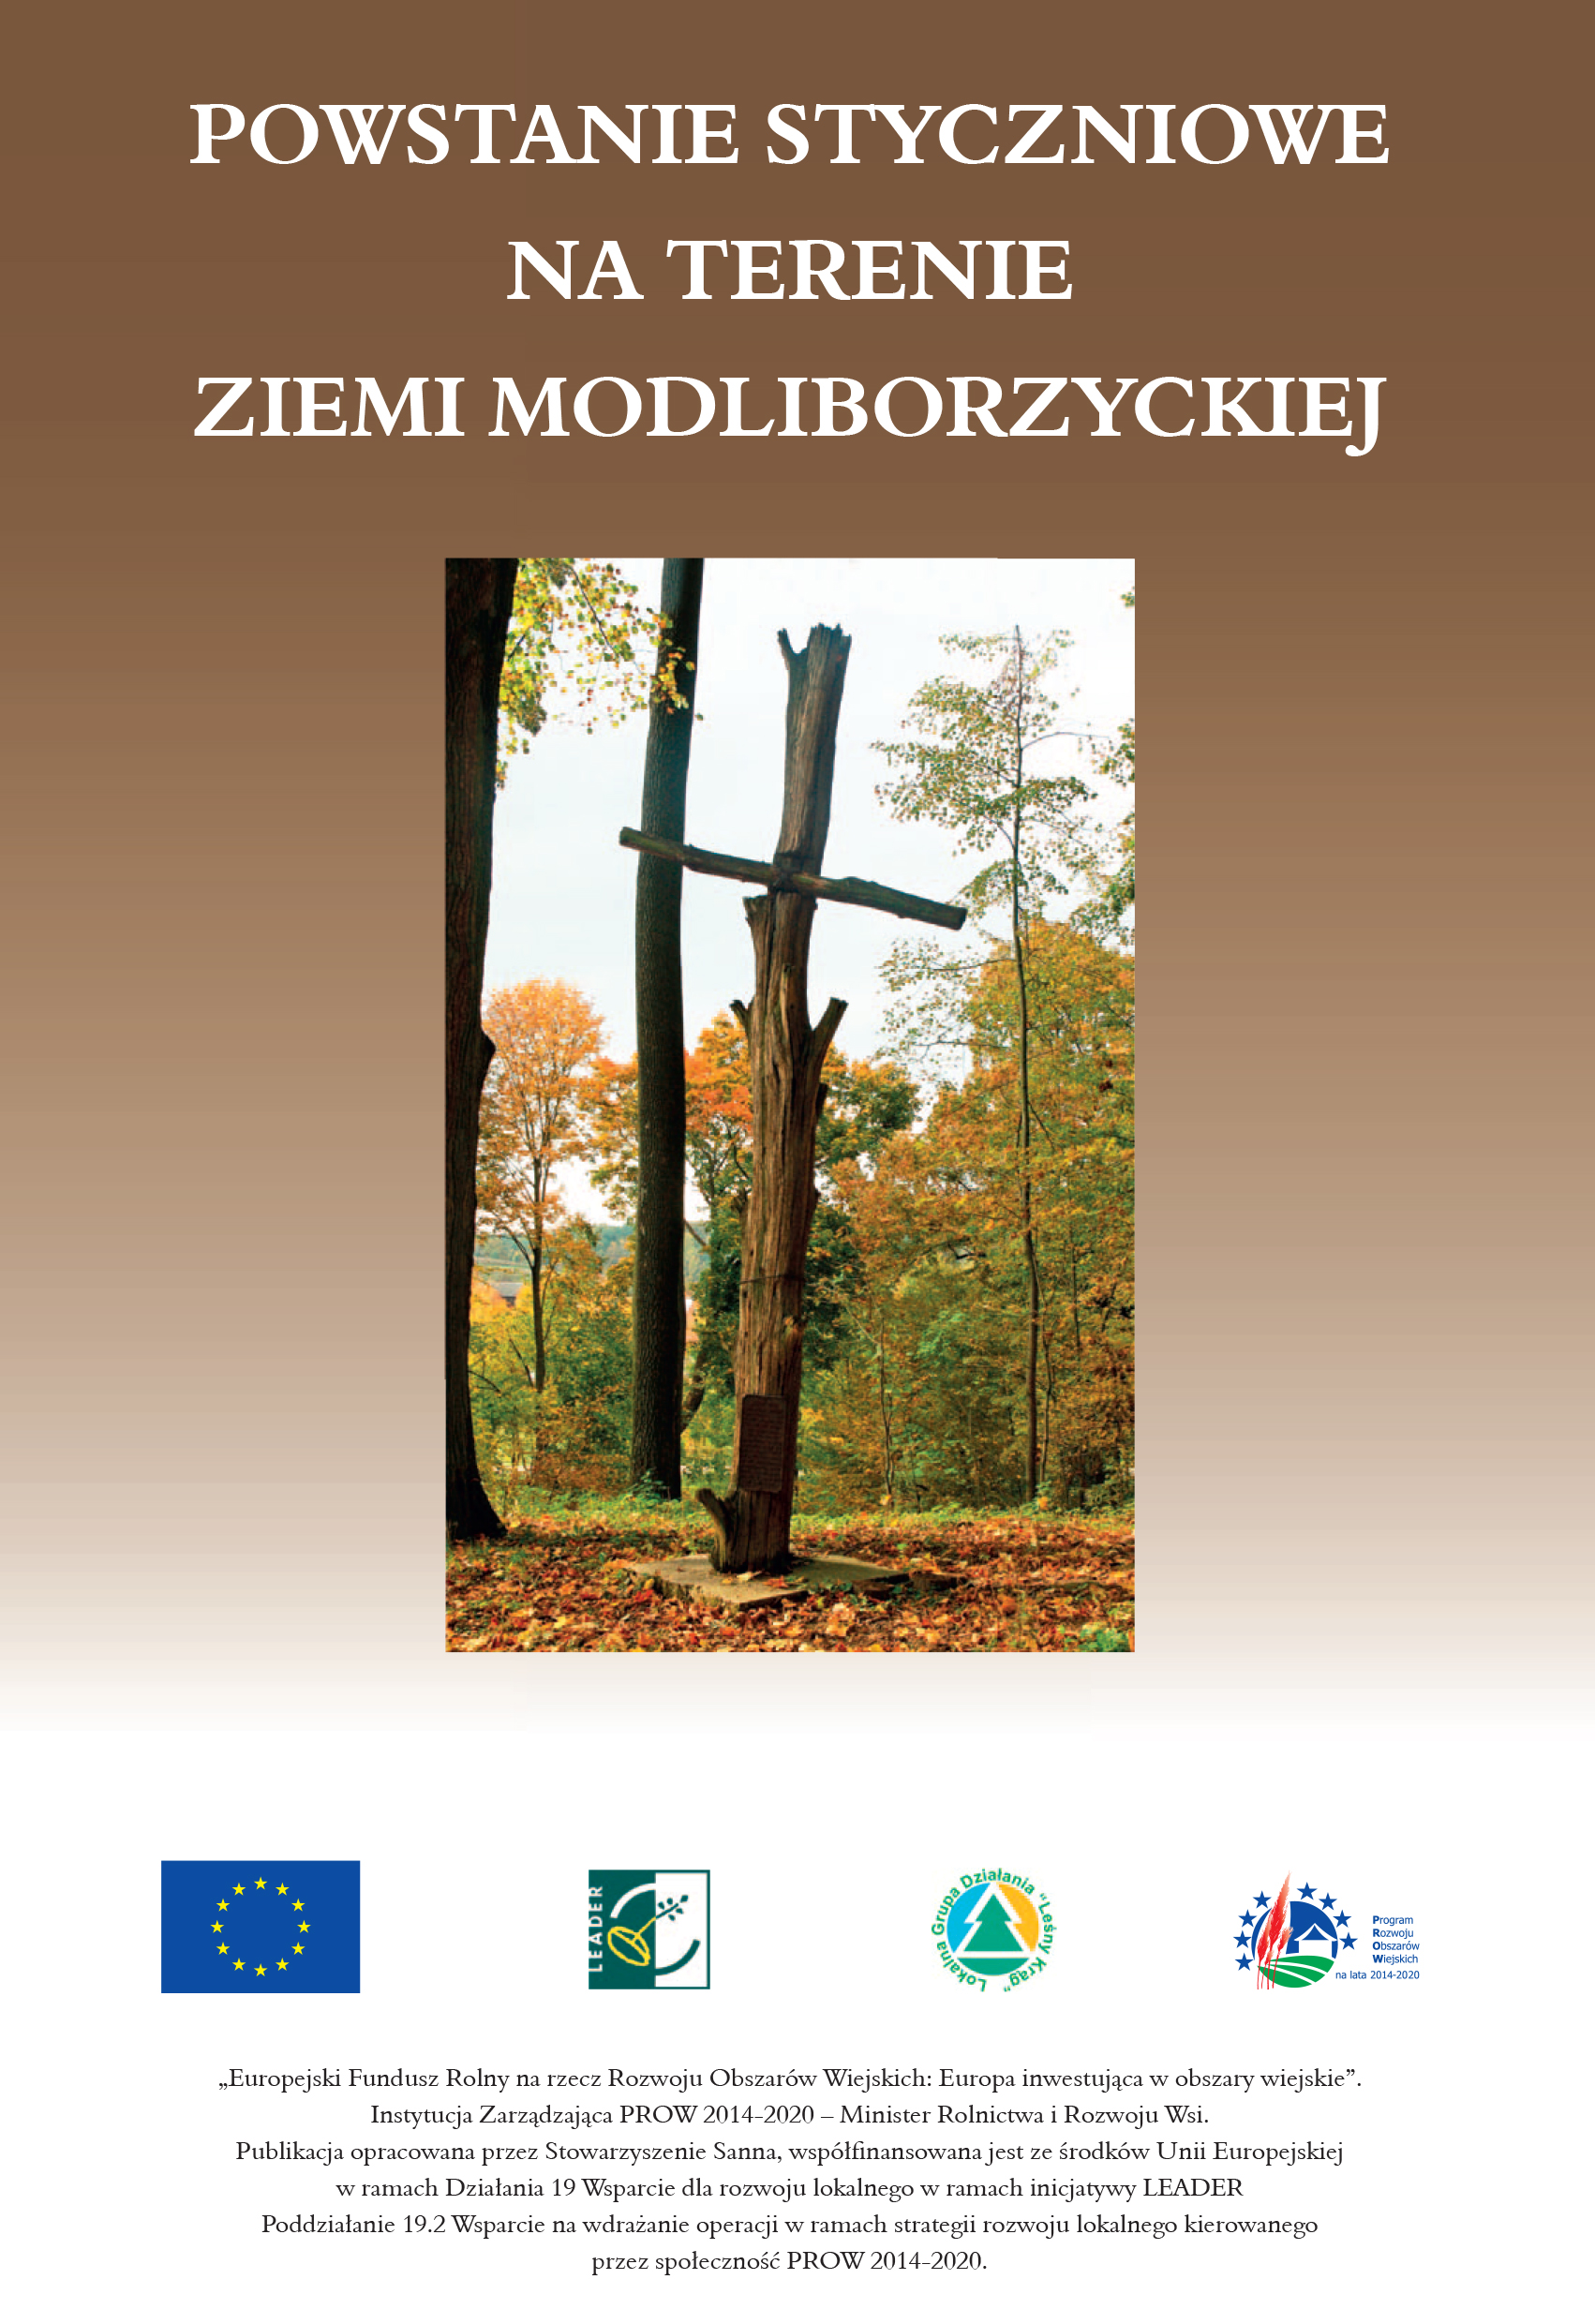 Książka "Powstanie Styczniowe na terenie ziemi modliborzyckiej"